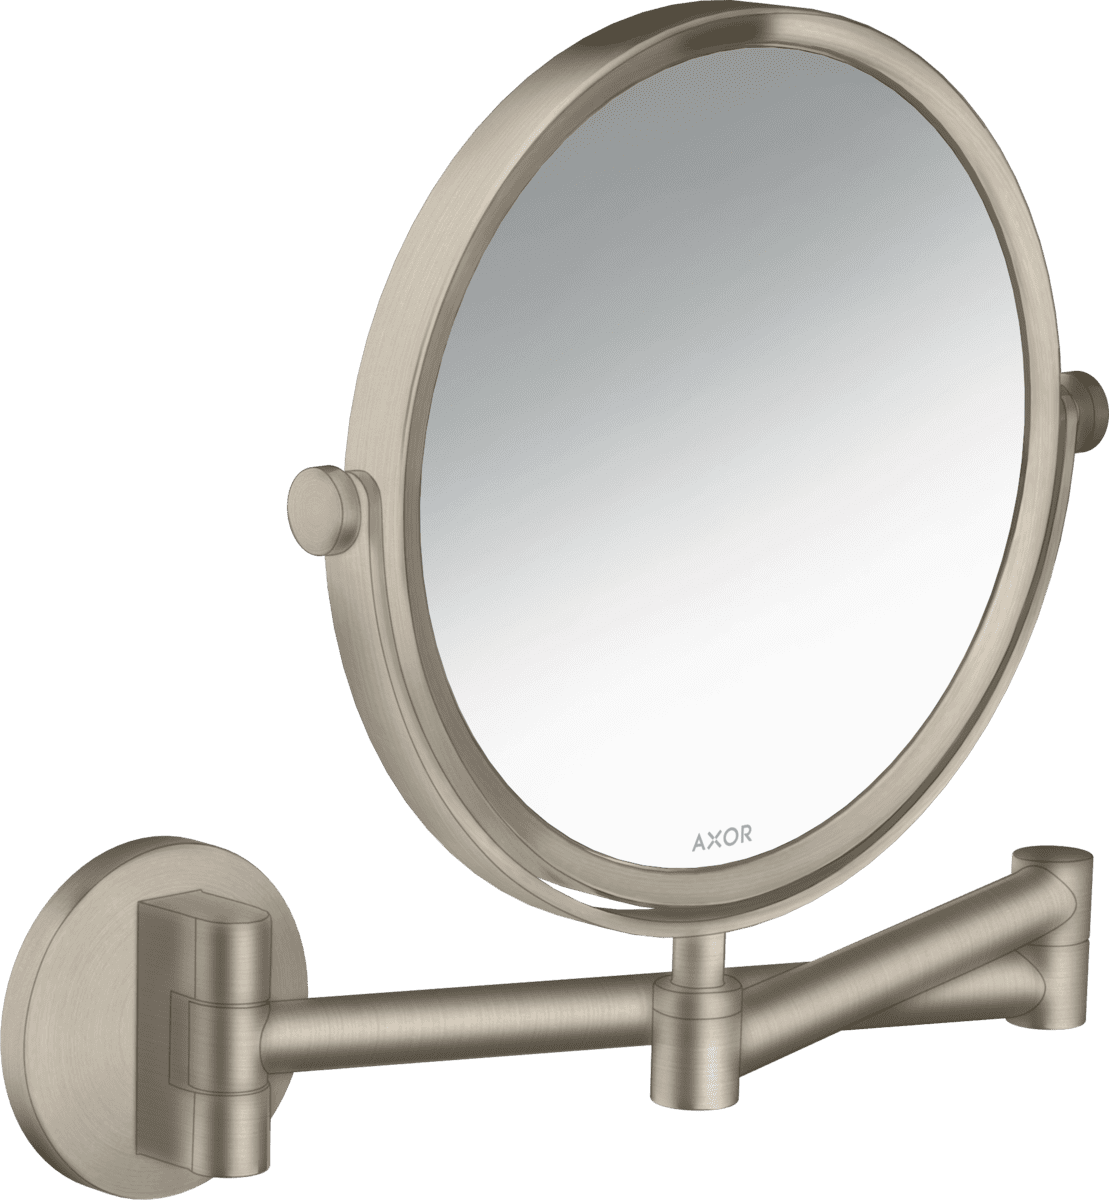 εικόνα του HANSGROHE AXOR Universal Circular Shaving mirror #42849820 - Brushed Nickel